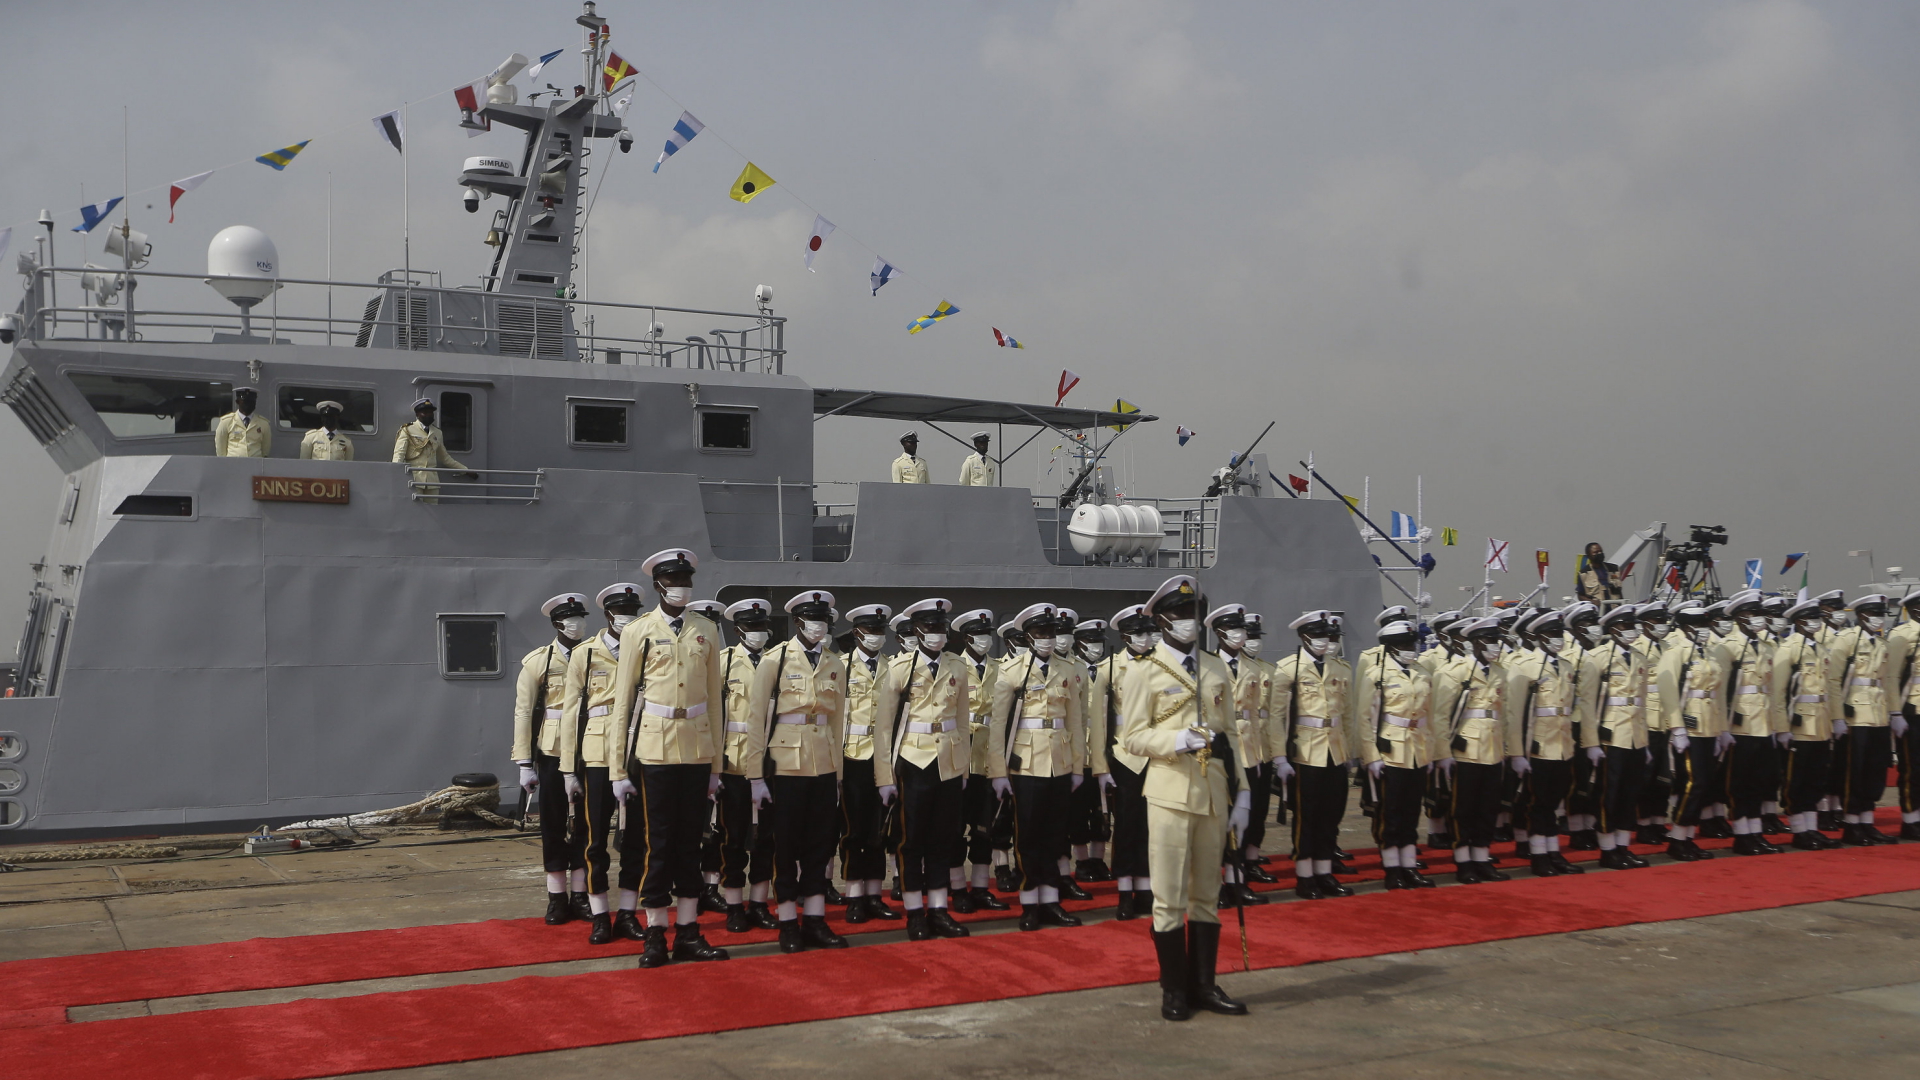 Feierliche Verabschiedung eines Schiffs der nigerianischen Marine in Lagos zur Bekämpfung der Piraterie im Golf von Guinea. | AP